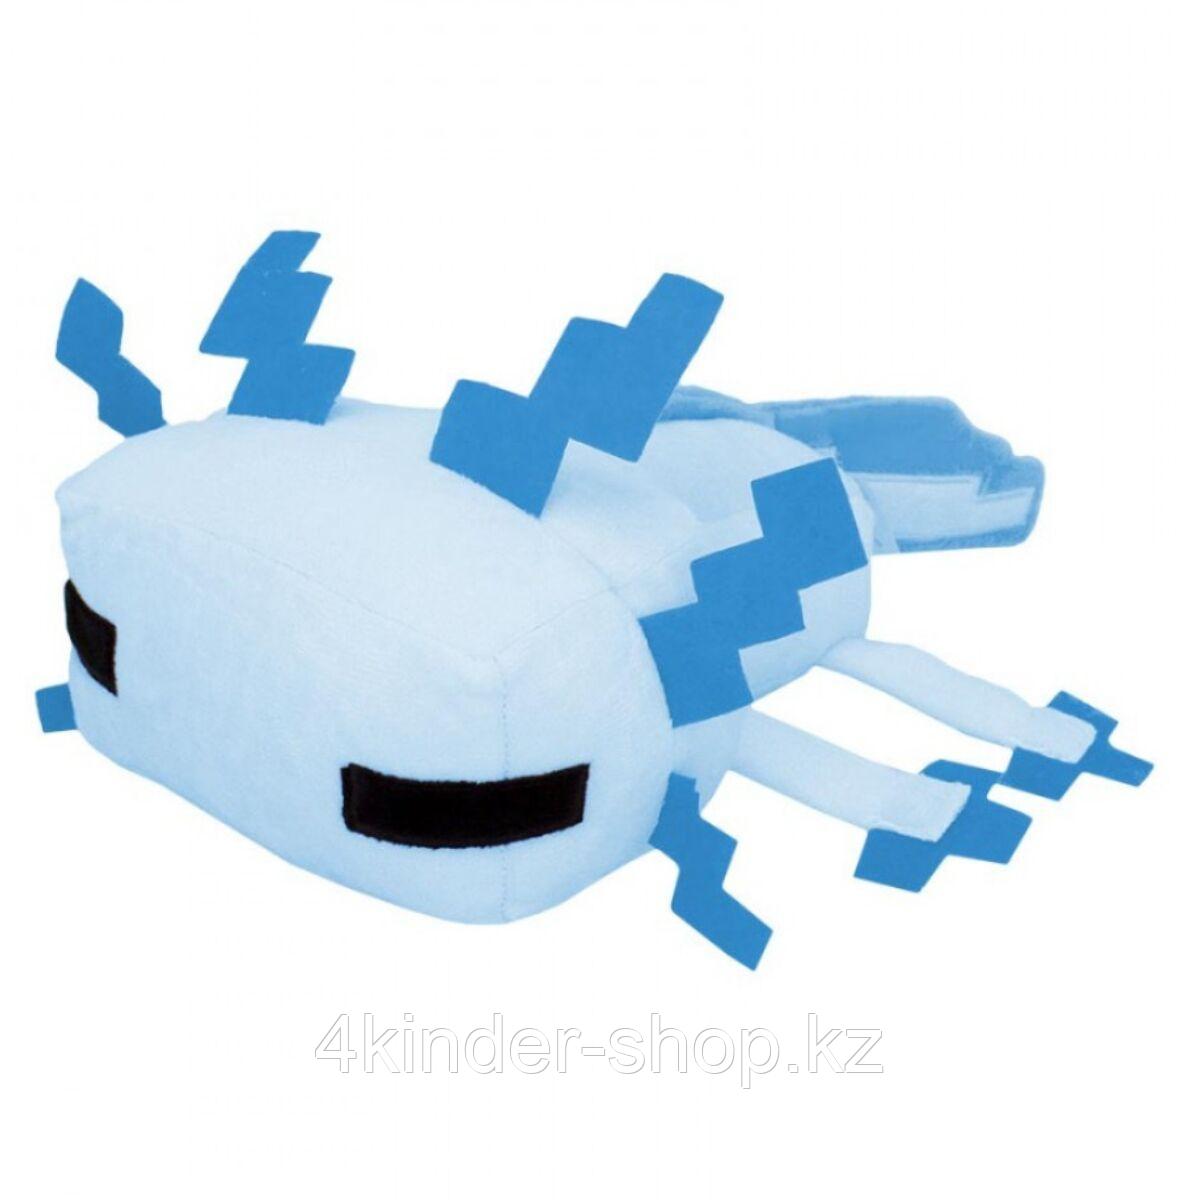 Minecraft Мягкая игрушка Axolotl голубой 34см